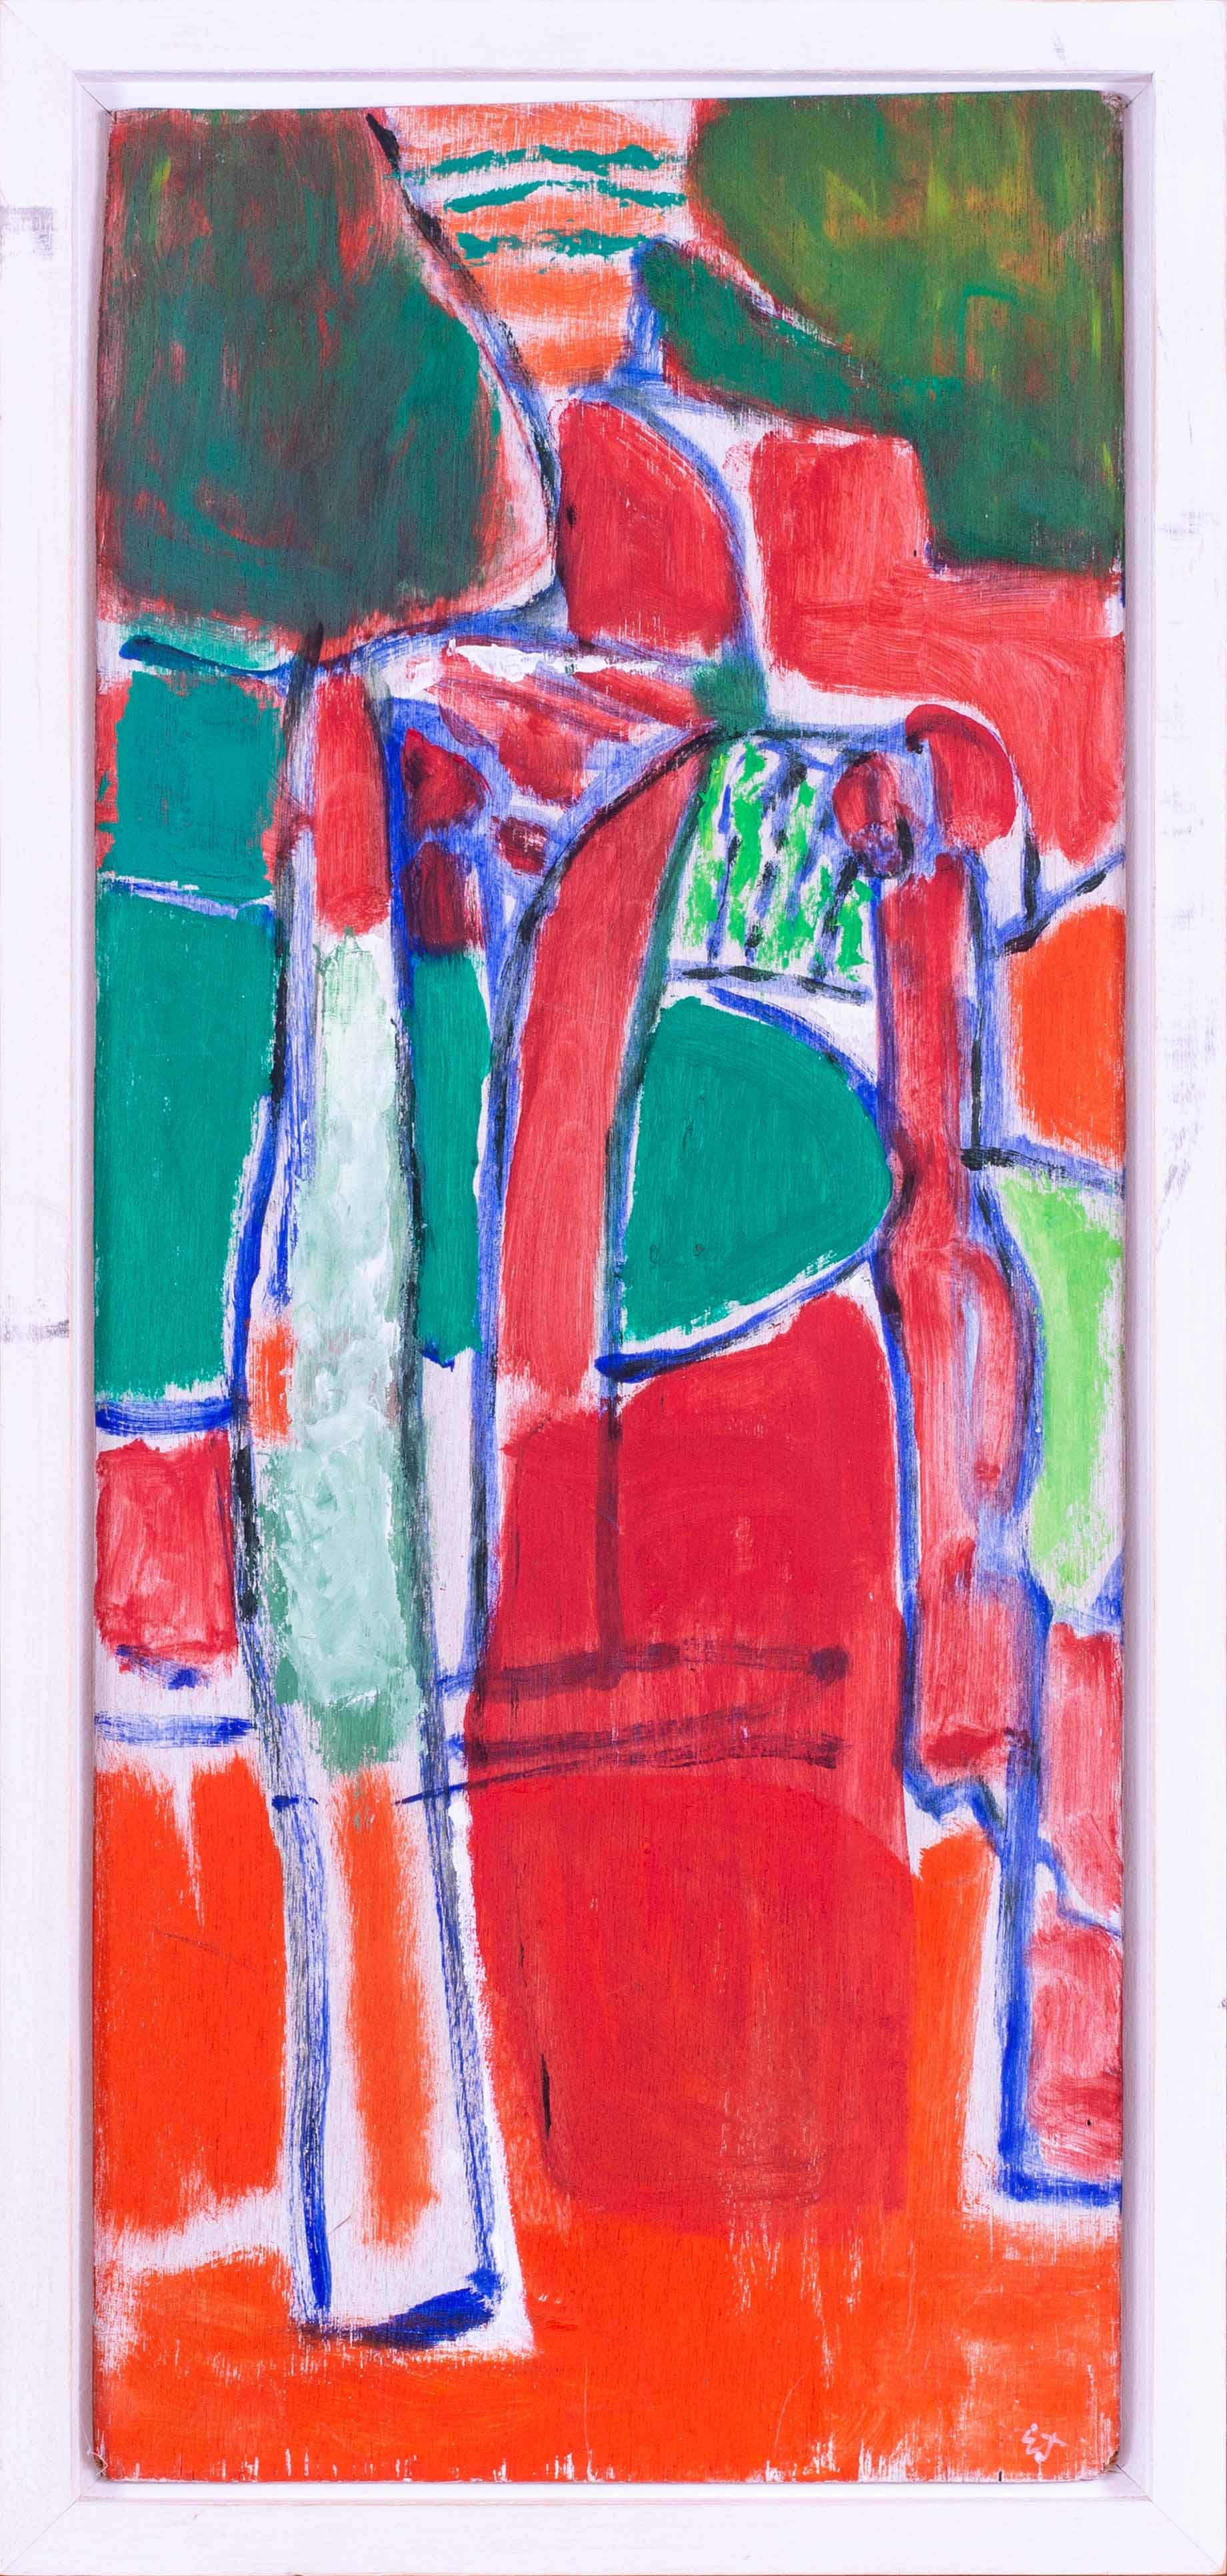 Une très belle et grande peinture abstraite de paysage rouge de l'artiste britannique moderne Ewart Johns.

Ewart Johns (britannique, 1923 - 2013)
Paysage rouge et arbres, Toscane
Huile et techniques mixtes sur panneau
Signé avec les initiales "EJ"